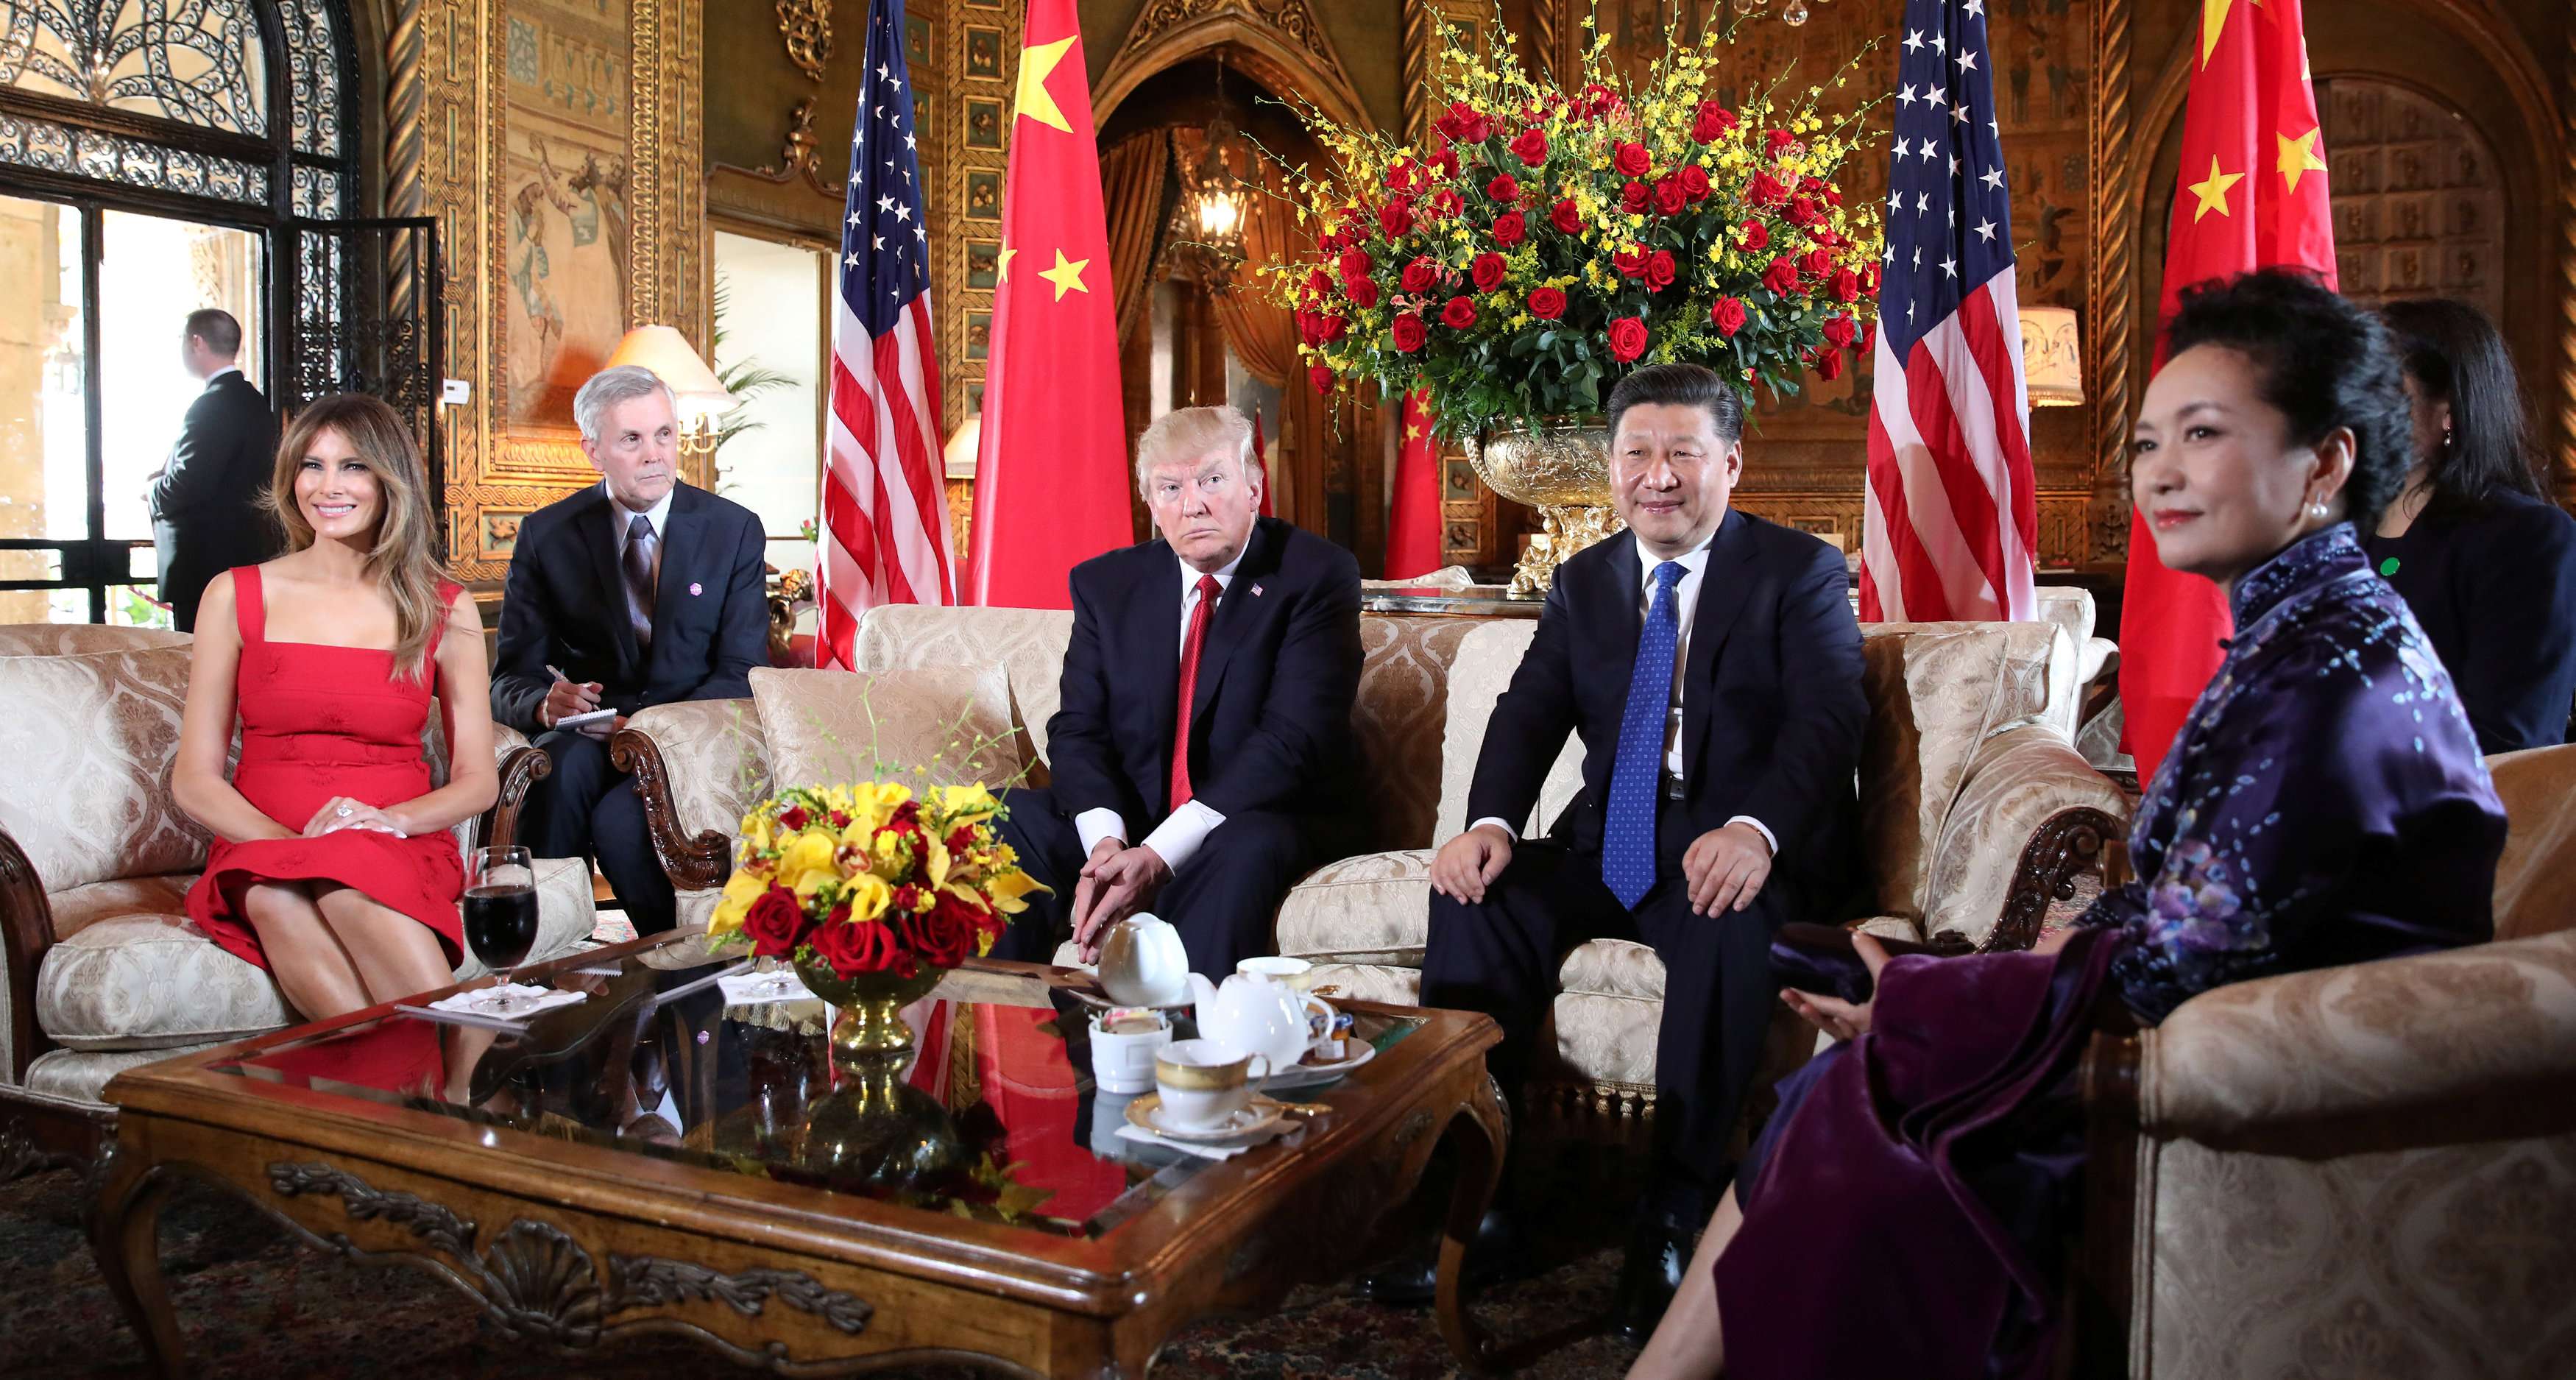 Melania and Donald Trump with Xi Jinping and Peng Liyuan at Mar-a-Lago. Photo: Reuters